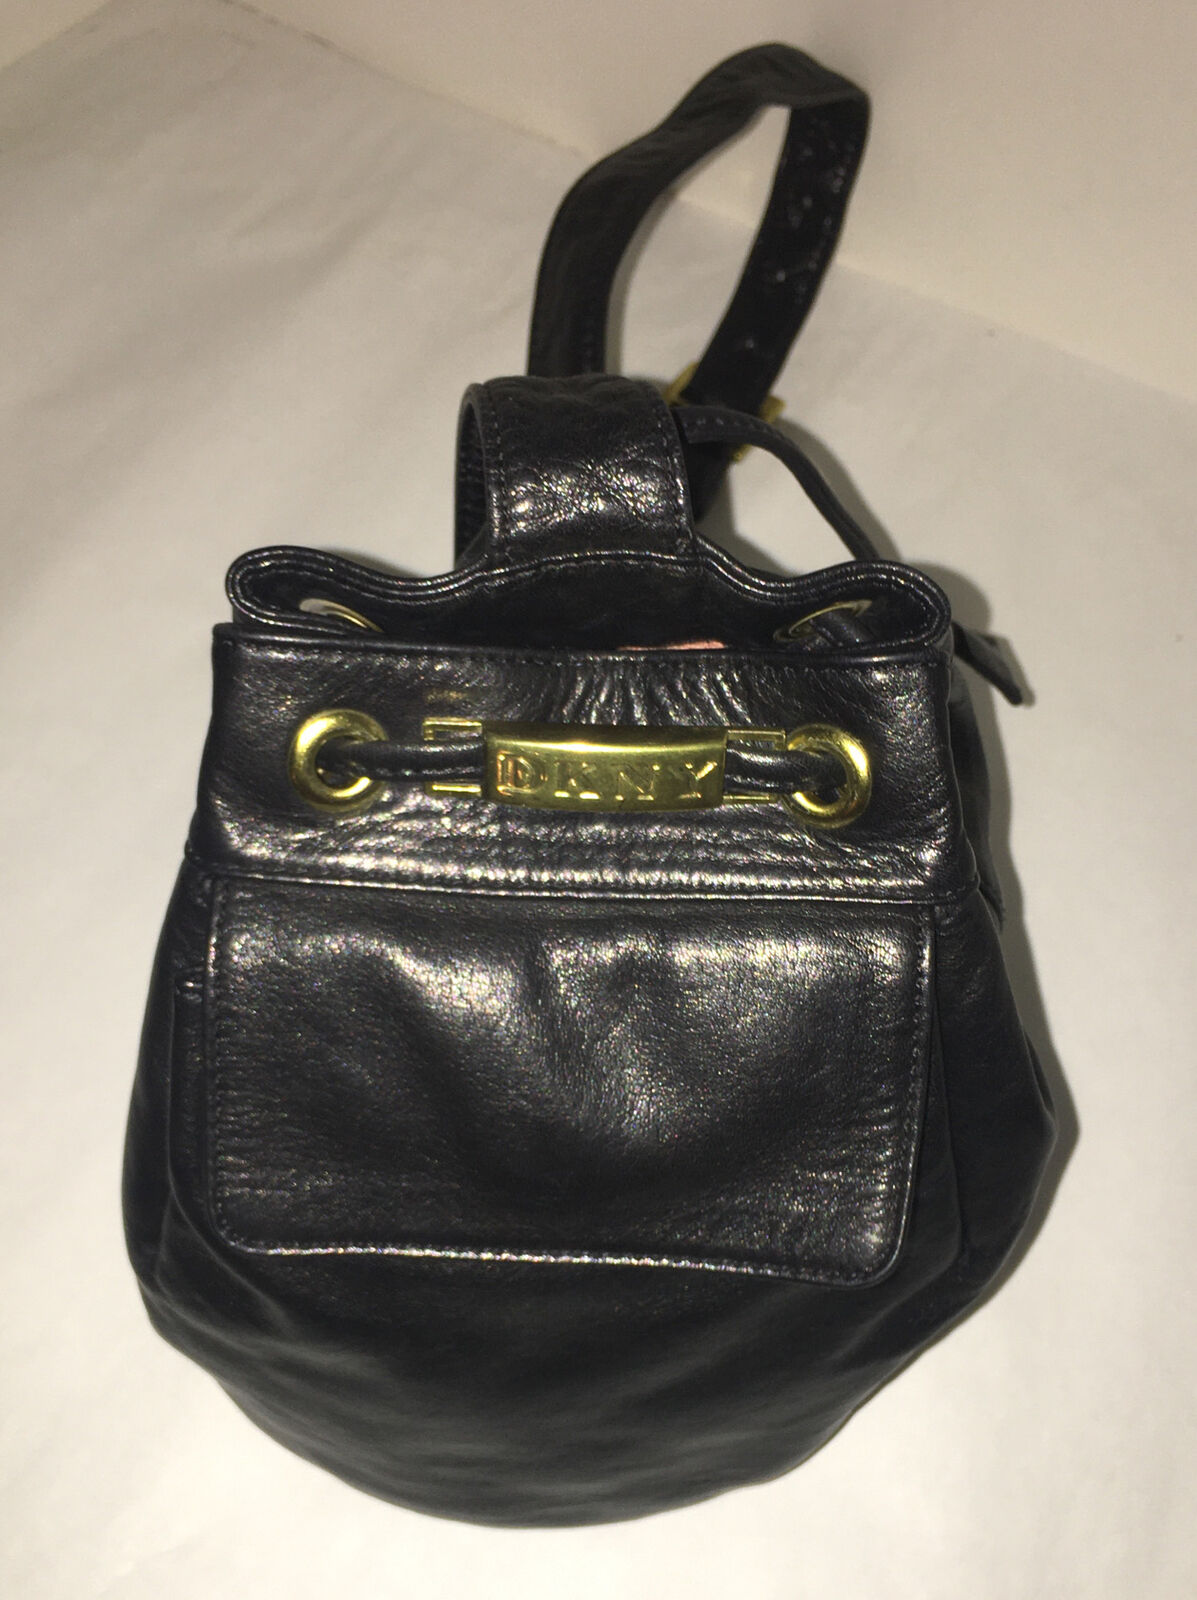 DKNY Donna Karen New York Black Leather Backpack … - image 3